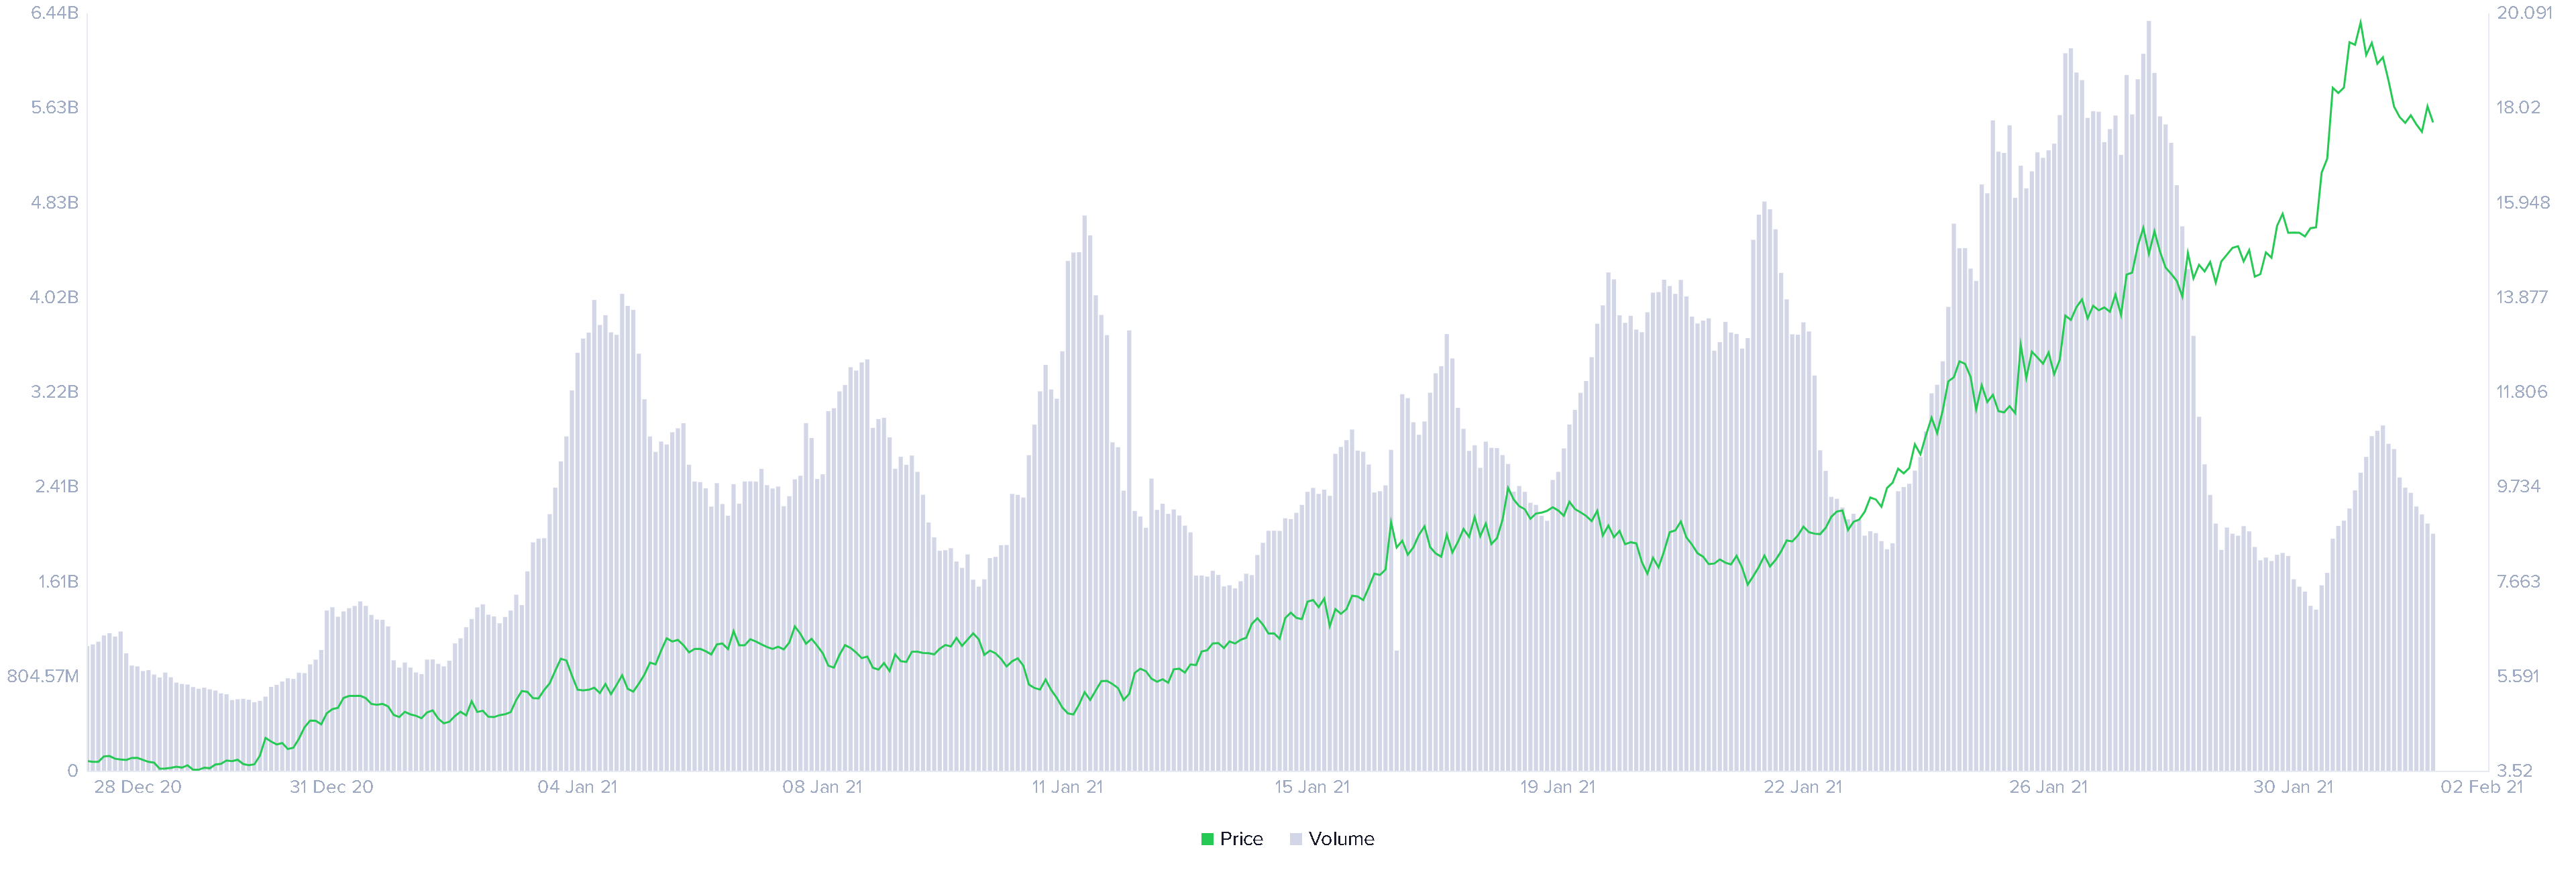 Uniswap price vs. volume